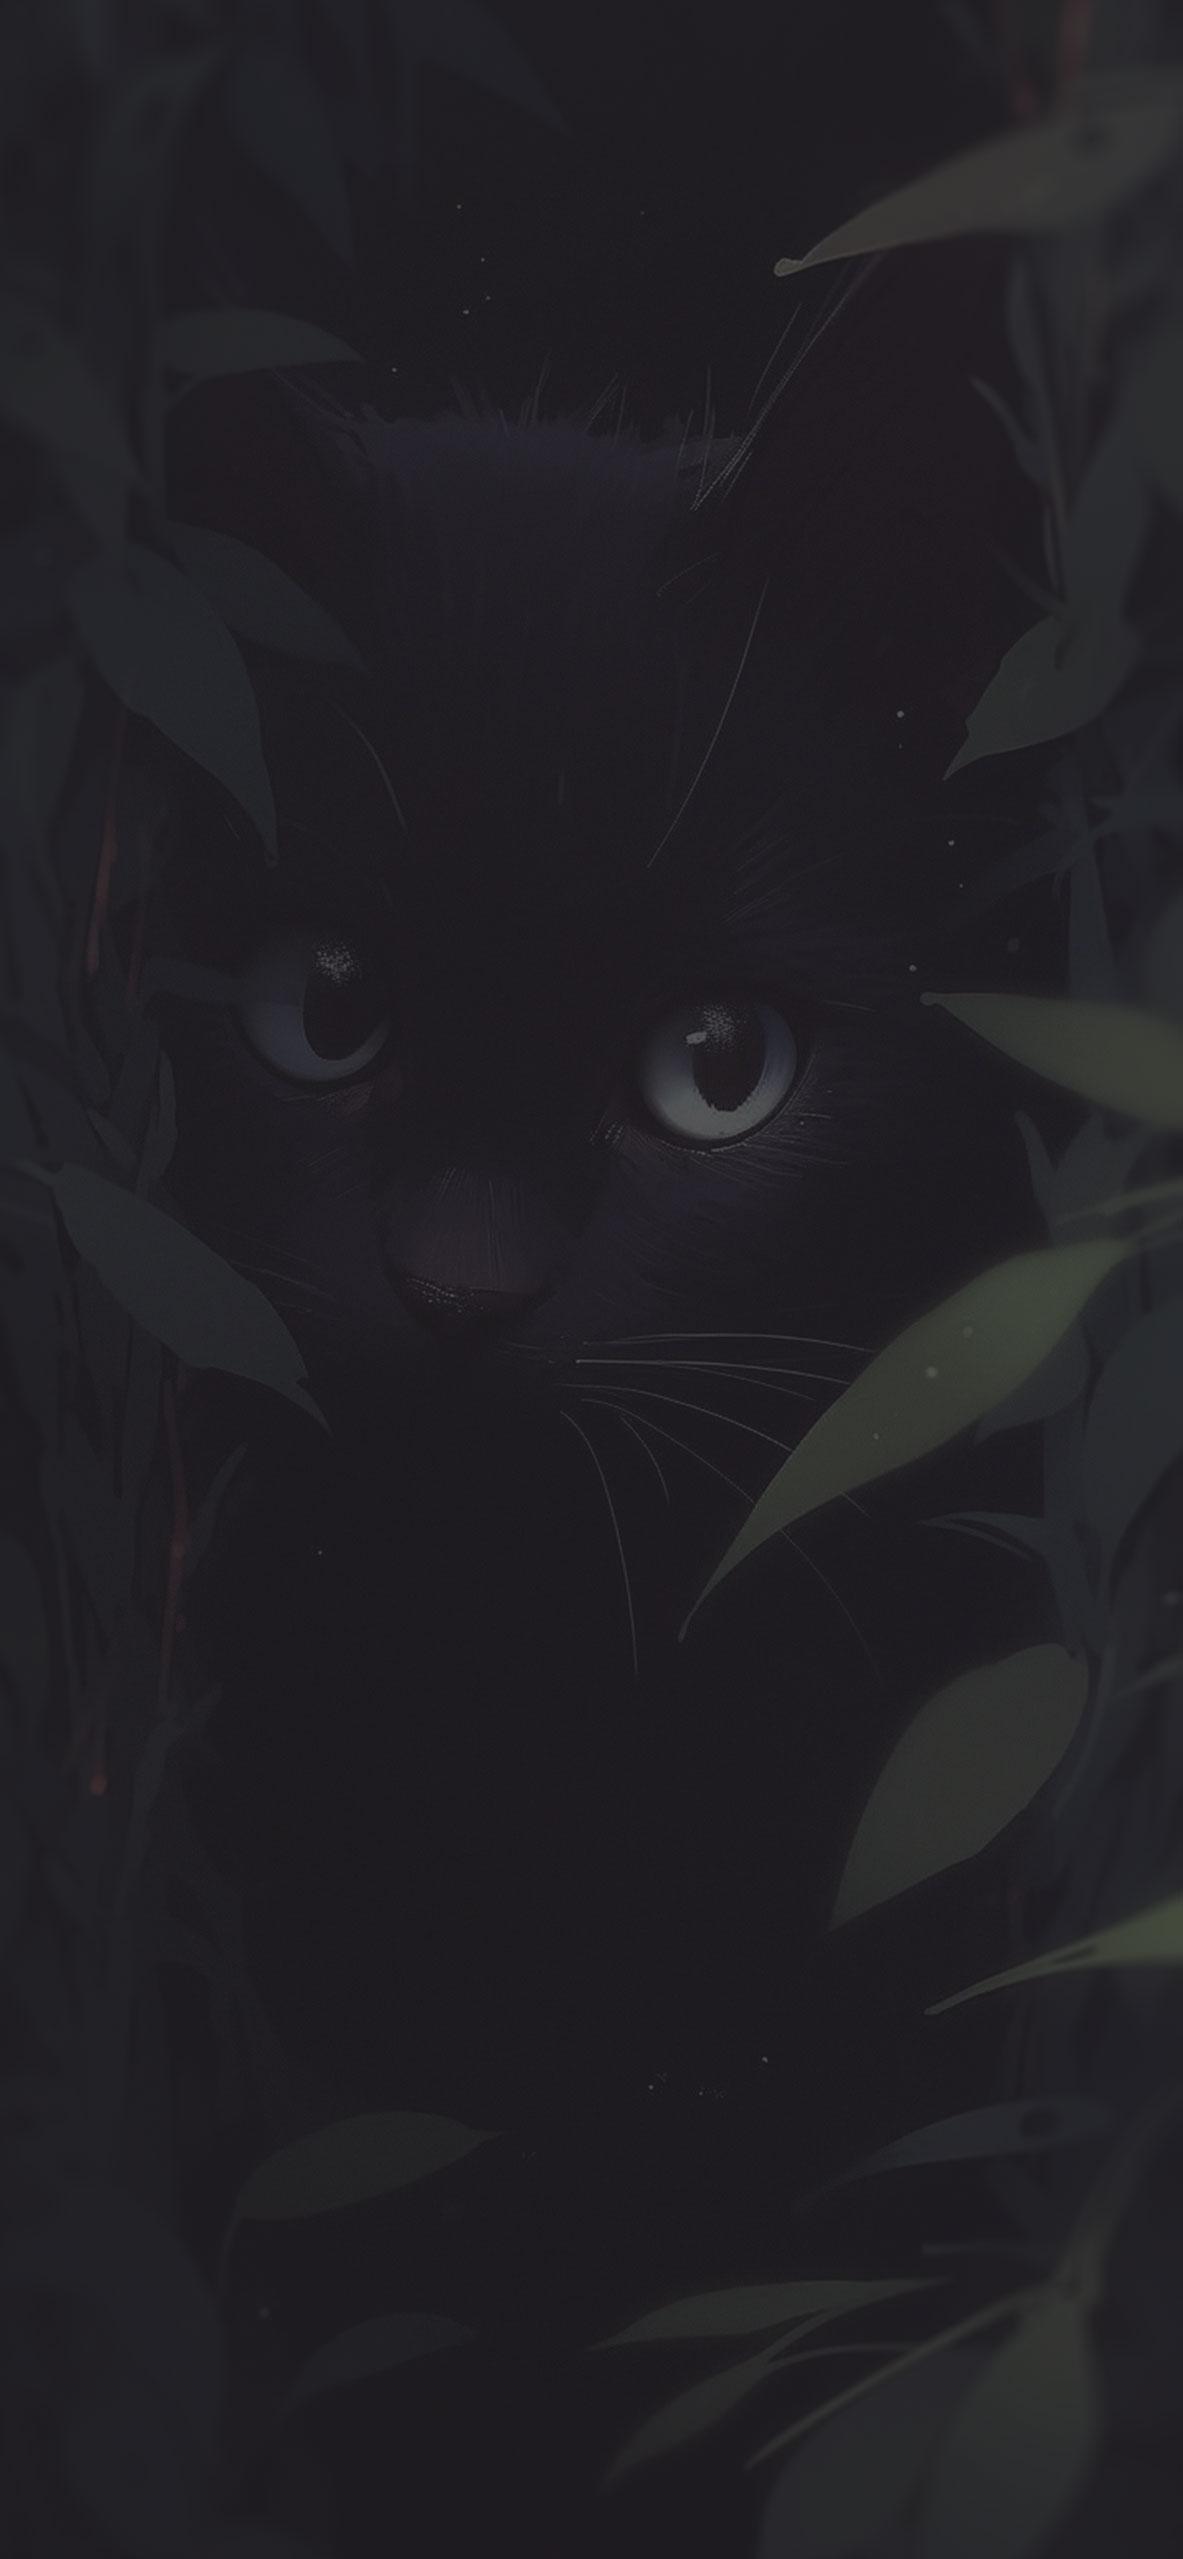 Cute Black Cat In The Grass Aesthetic Wallpaper Feline